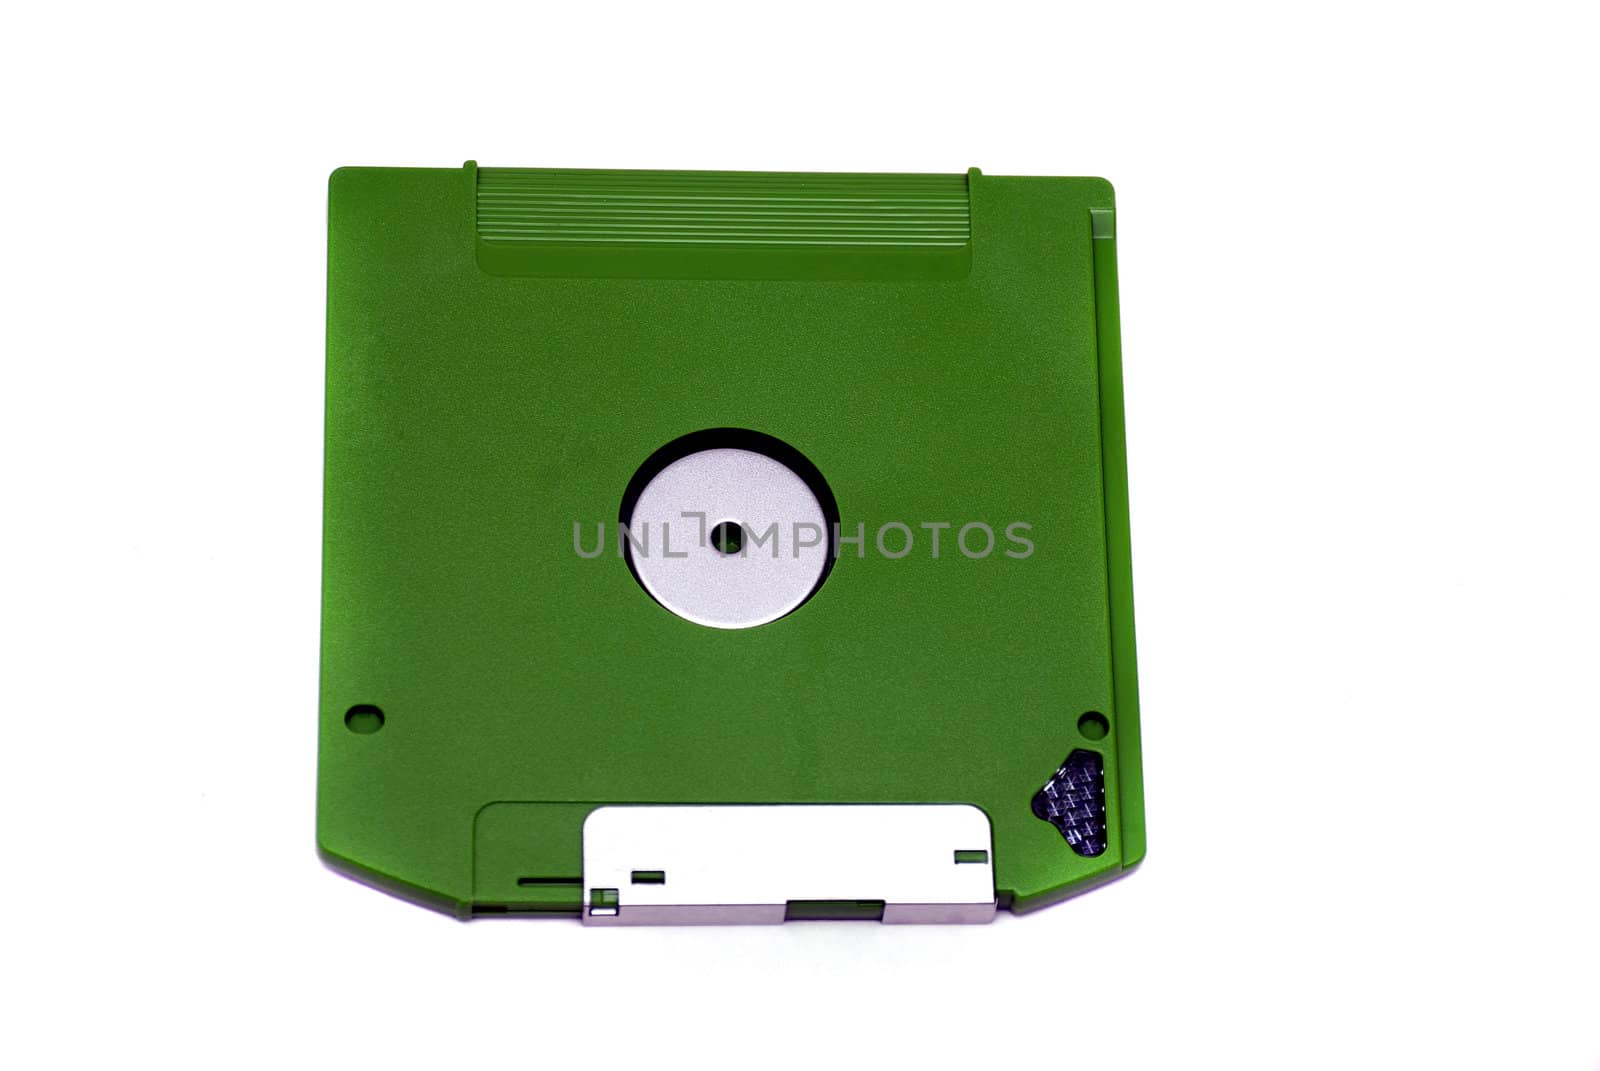 Floppy disc by pazham